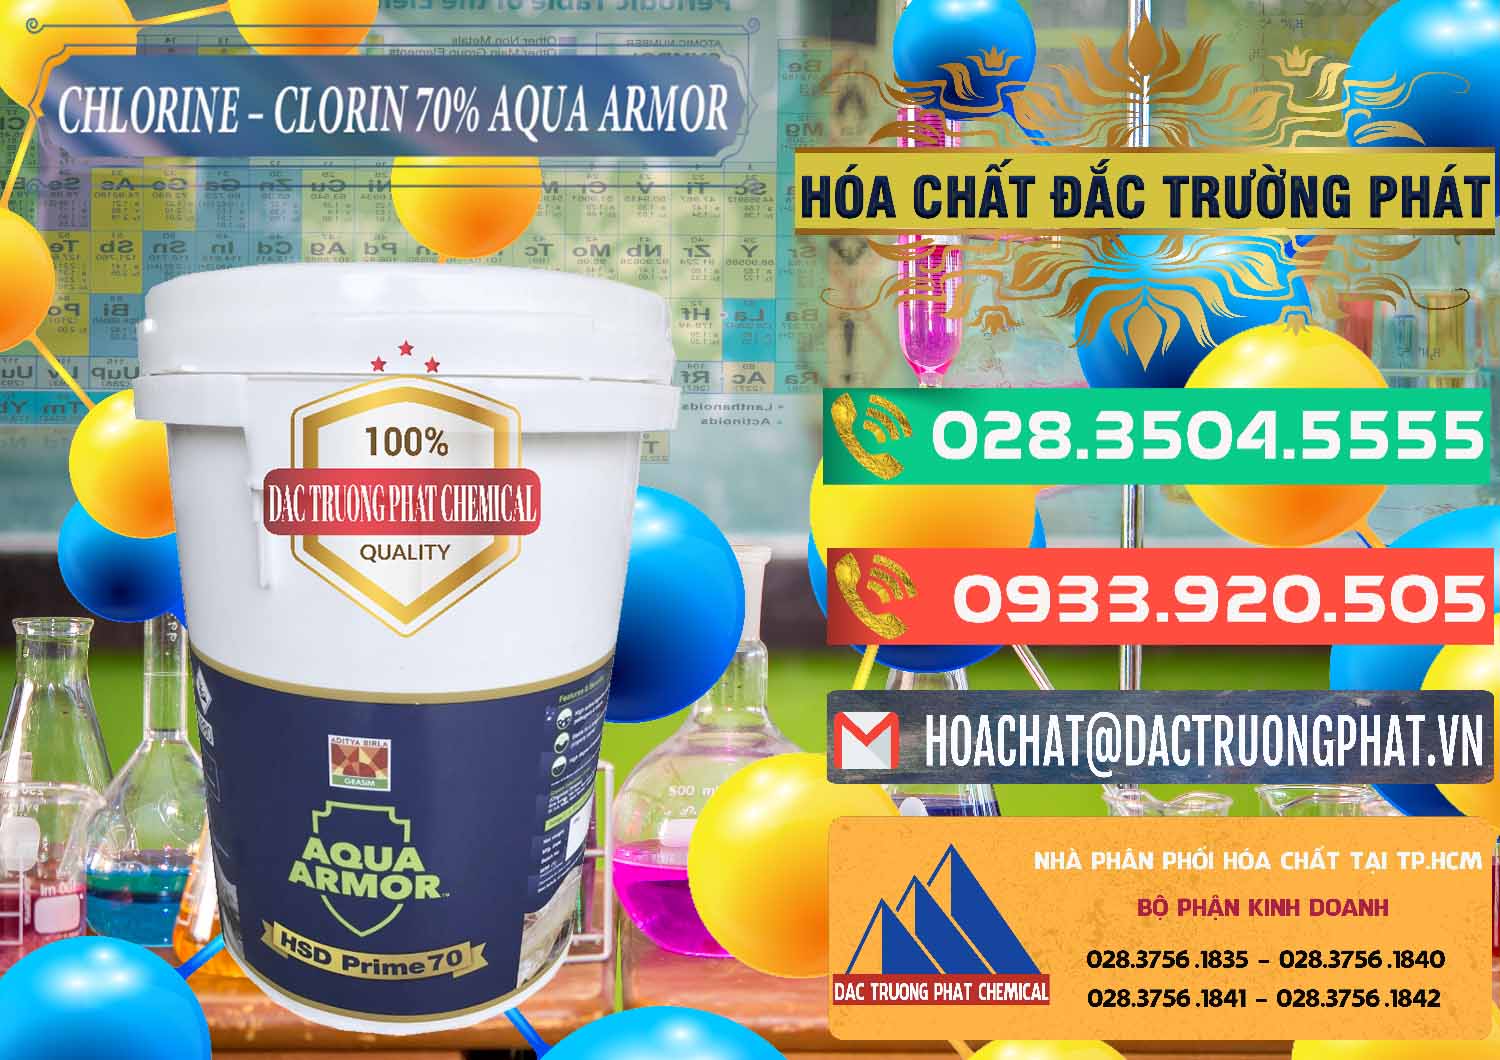 Đơn vị chuyên nhập khẩu _ bán Chlorine – Clorin 70% Aqua Armor Aditya Birla Grasim Ấn Độ India - 0241 - Cty cung cấp và phân phối hóa chất tại TP.HCM - congtyhoachat.com.vn